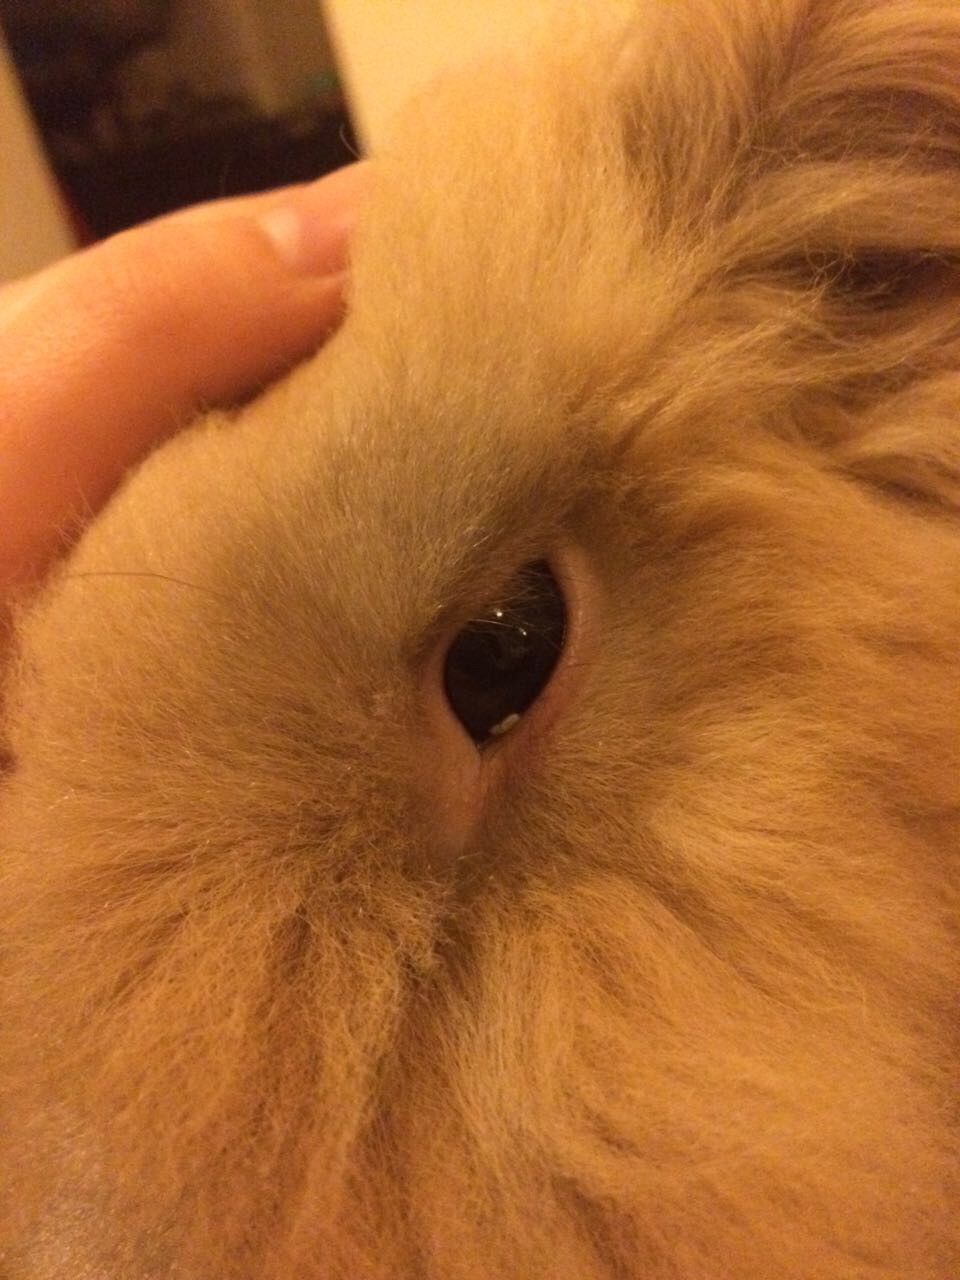 兔兔的眼睛里可能长寄生虫吗?